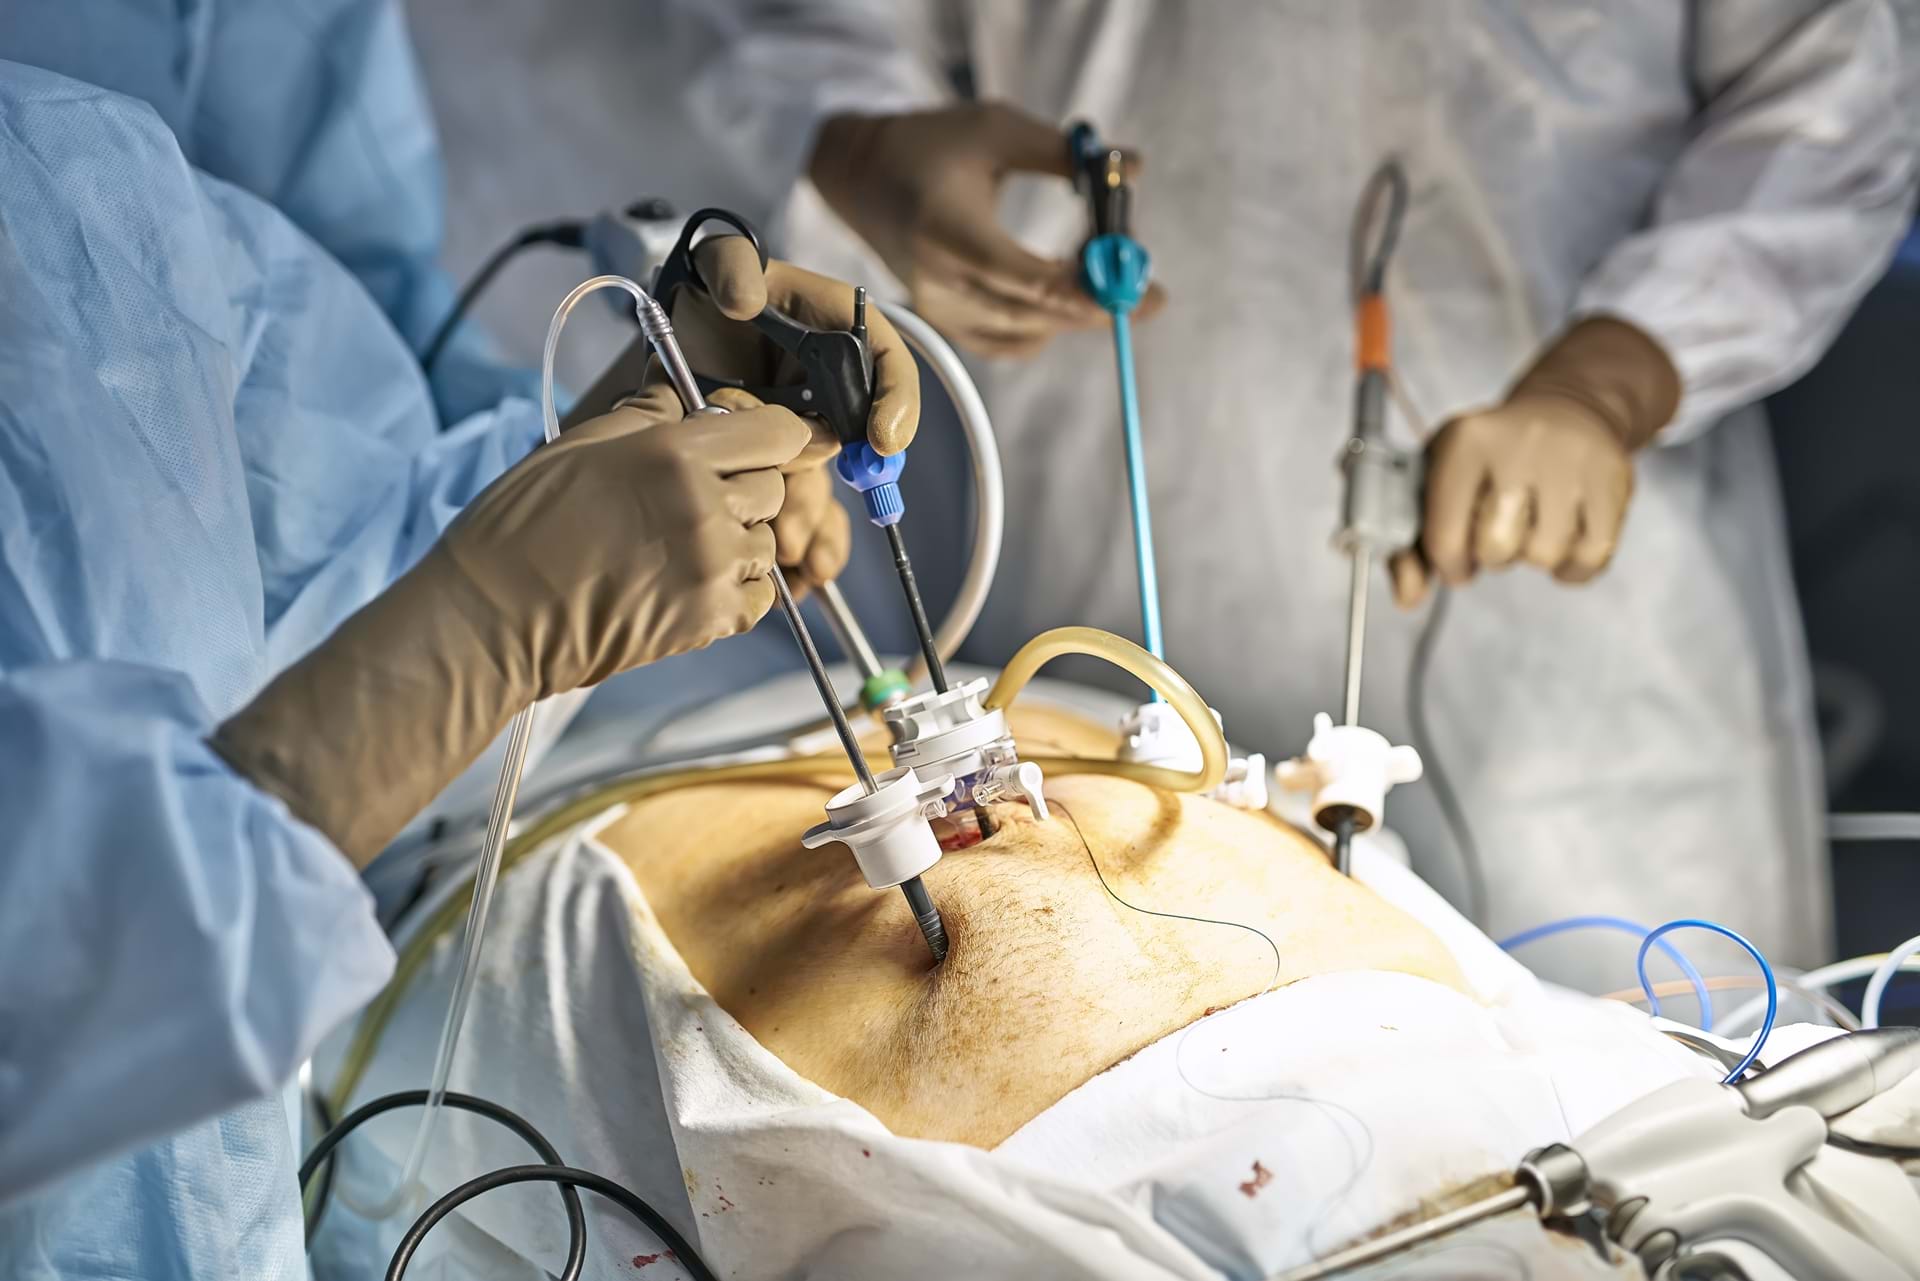 Underveis i en laparoskopi operasjon